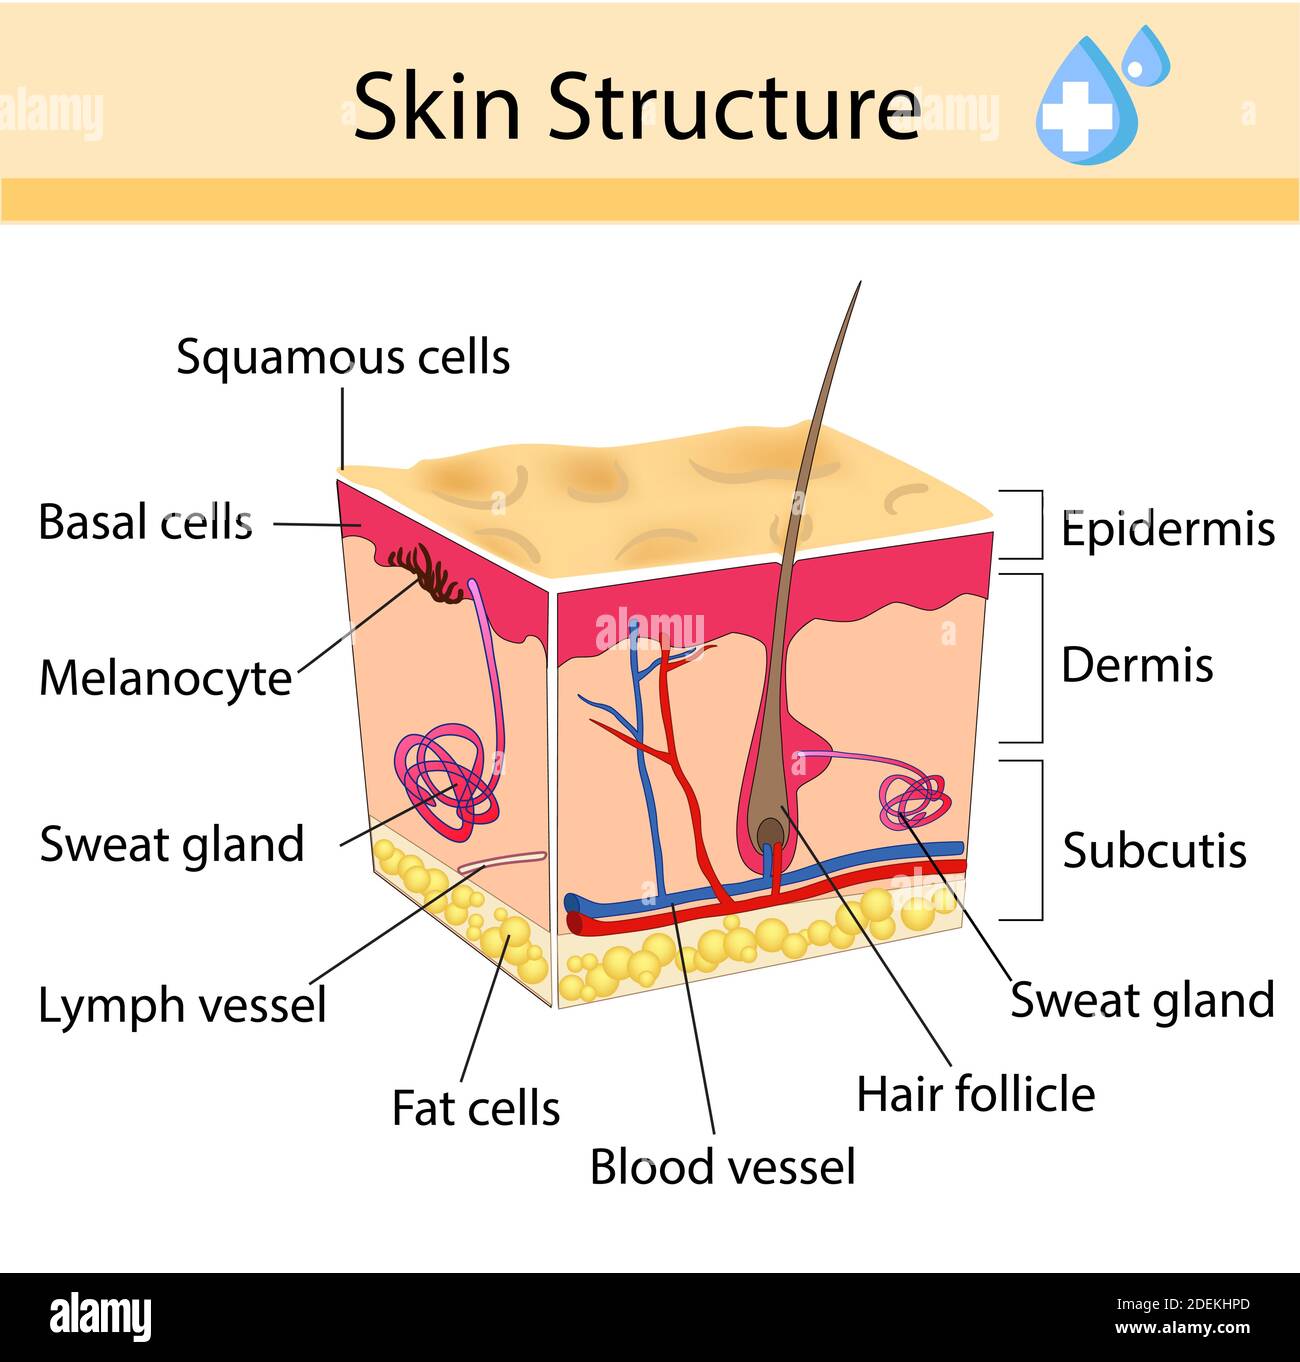 La peau humaine et la structure des cheveux. Signe anatomique. Illustration isolée de soins de beauté Illustration de Vecteur